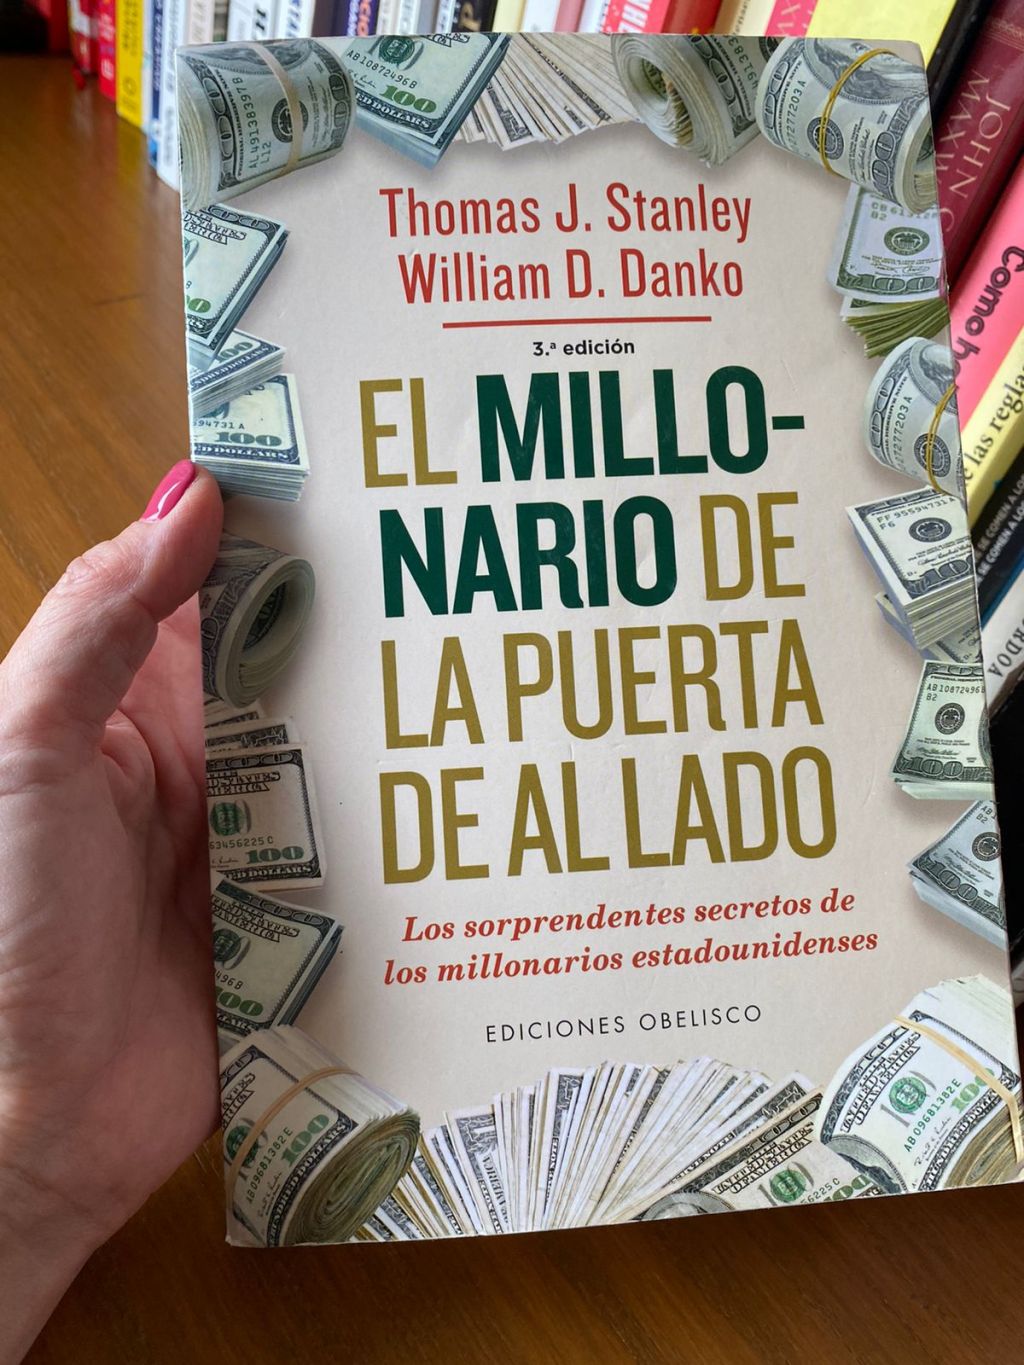 El millonario de la puerta de al lado - Rebeca Muñoz Cornejo